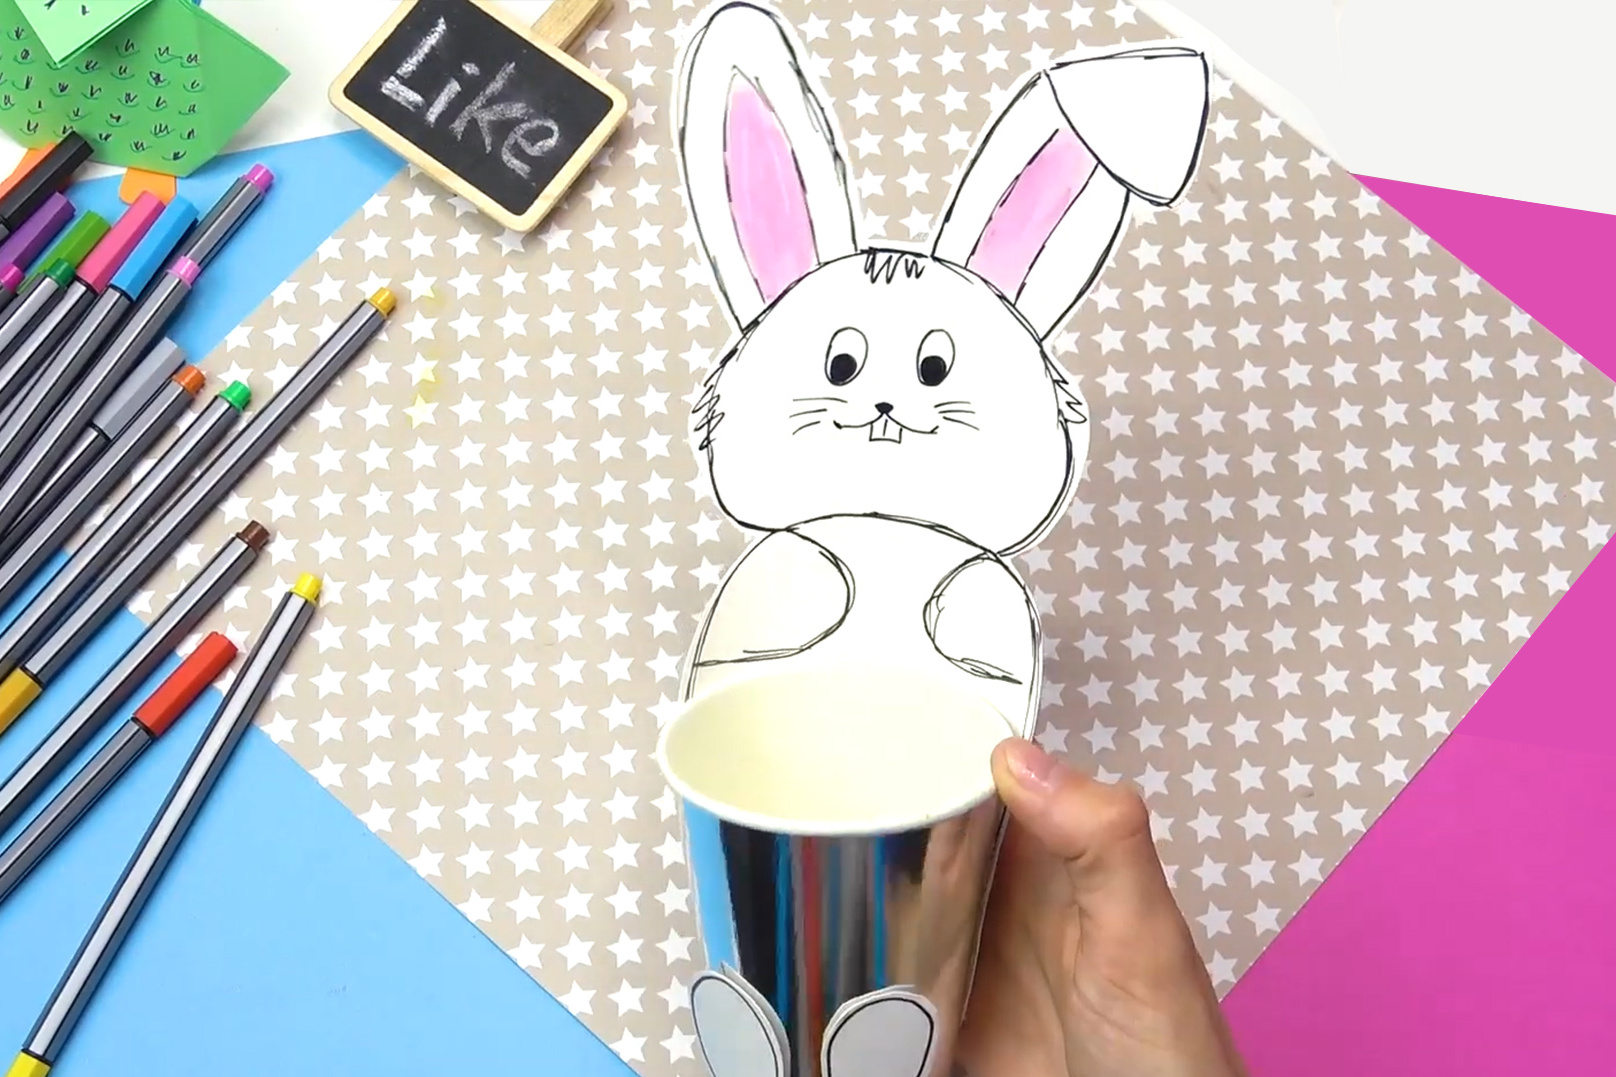 学校的天才创意手工制作小兔子笔筒个性可爱卡通铅笔筒文具筒